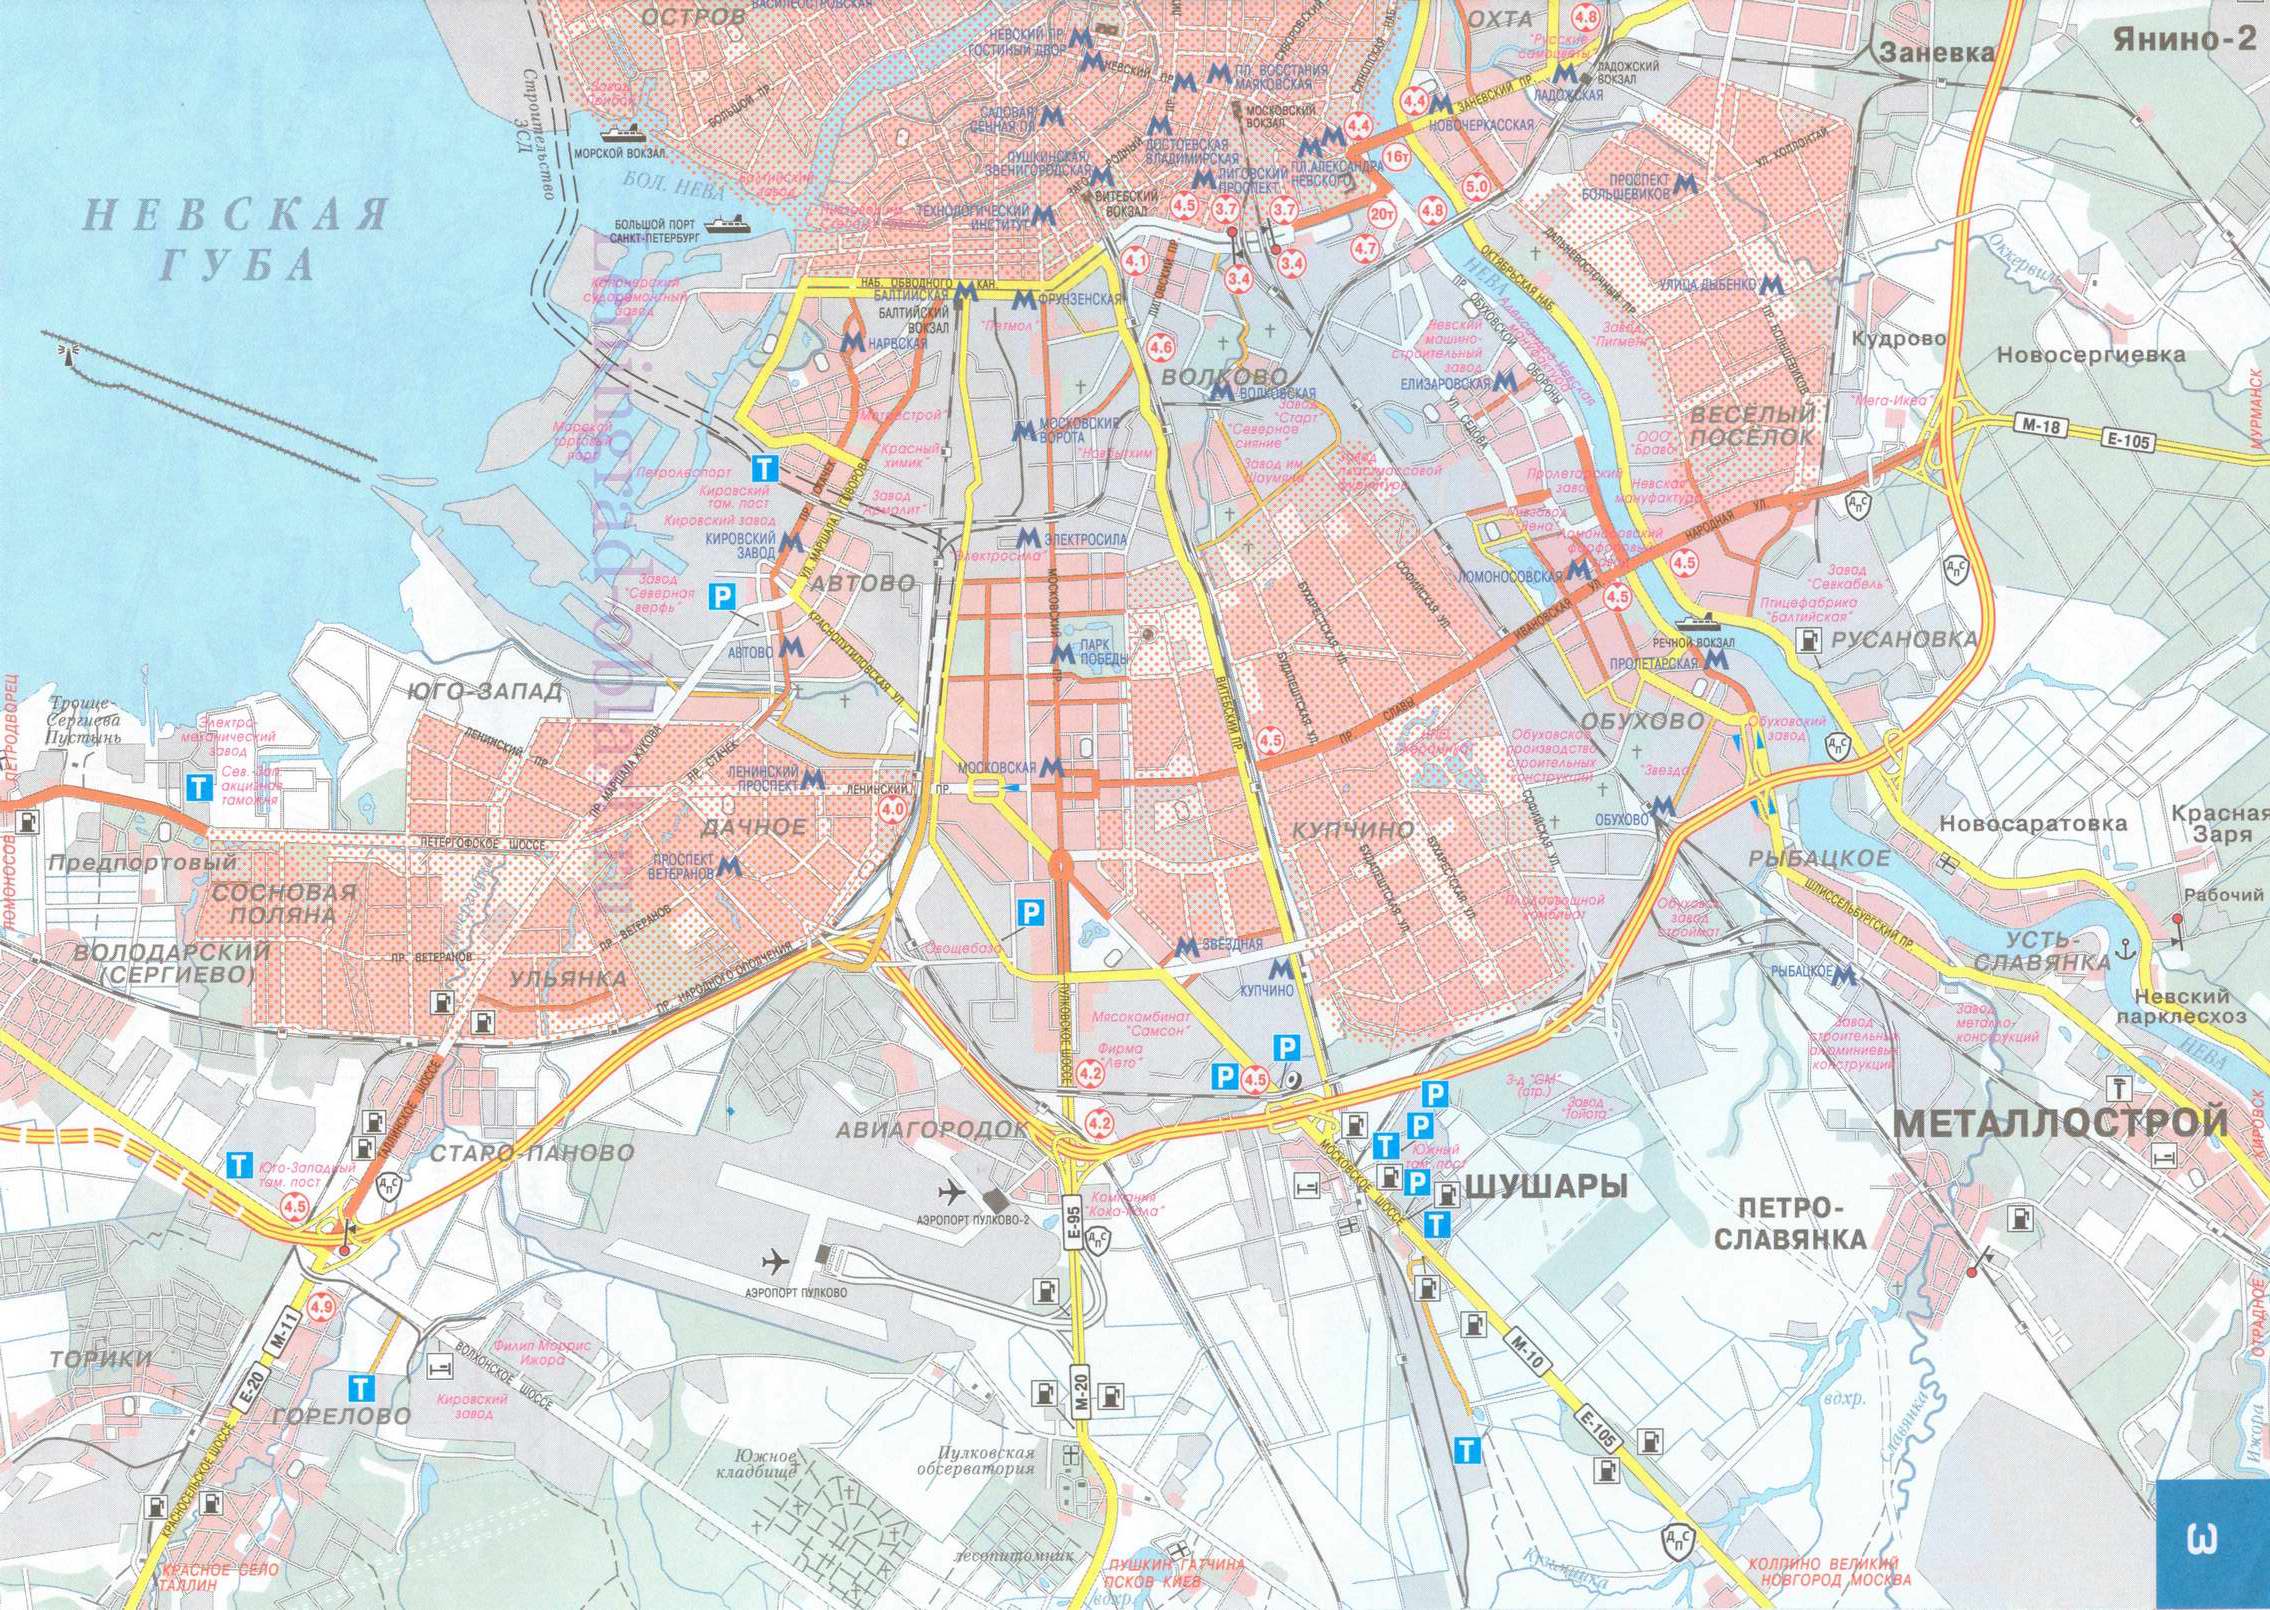 Карта автомобильная Санкт-Петербурга. Карта автомобильных дорог Санкт-Петербурга. Подробная карта дорог Санкт-Петербурга с указанием маршрутов транзитного проезда через город, A1 - 